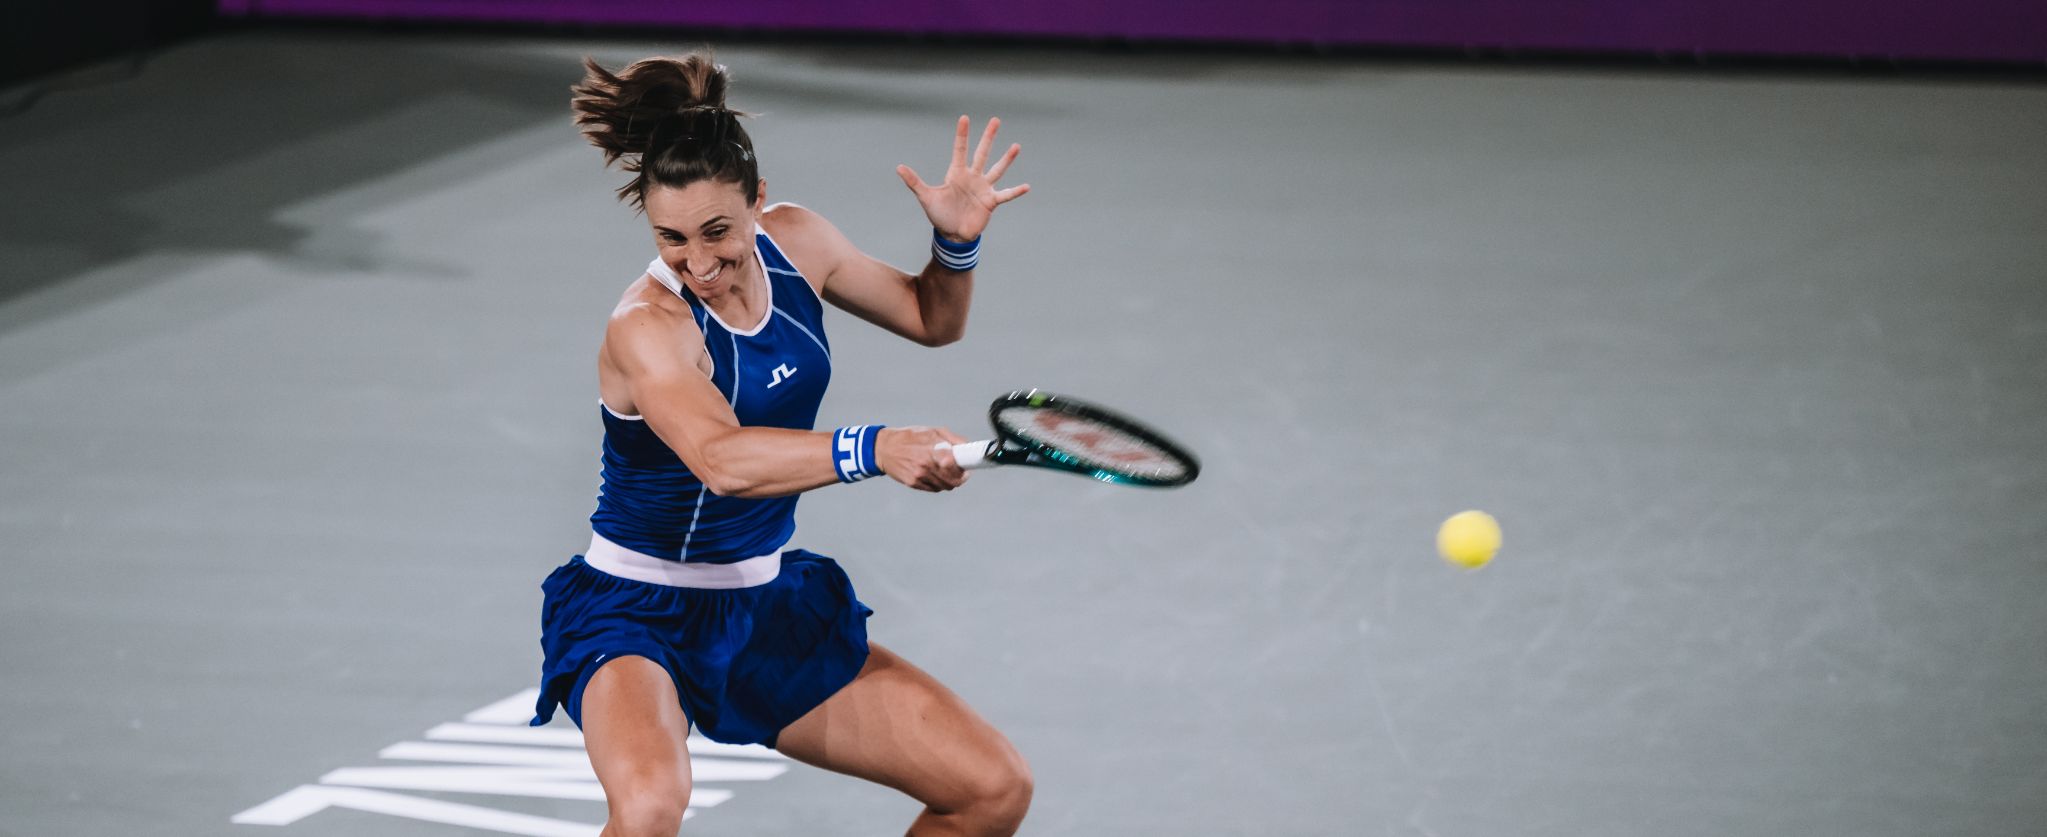 Petra Martić rano završila nastup na WTA turniru u Linzu, Čehinja Siniakova do pobjede u tri seta